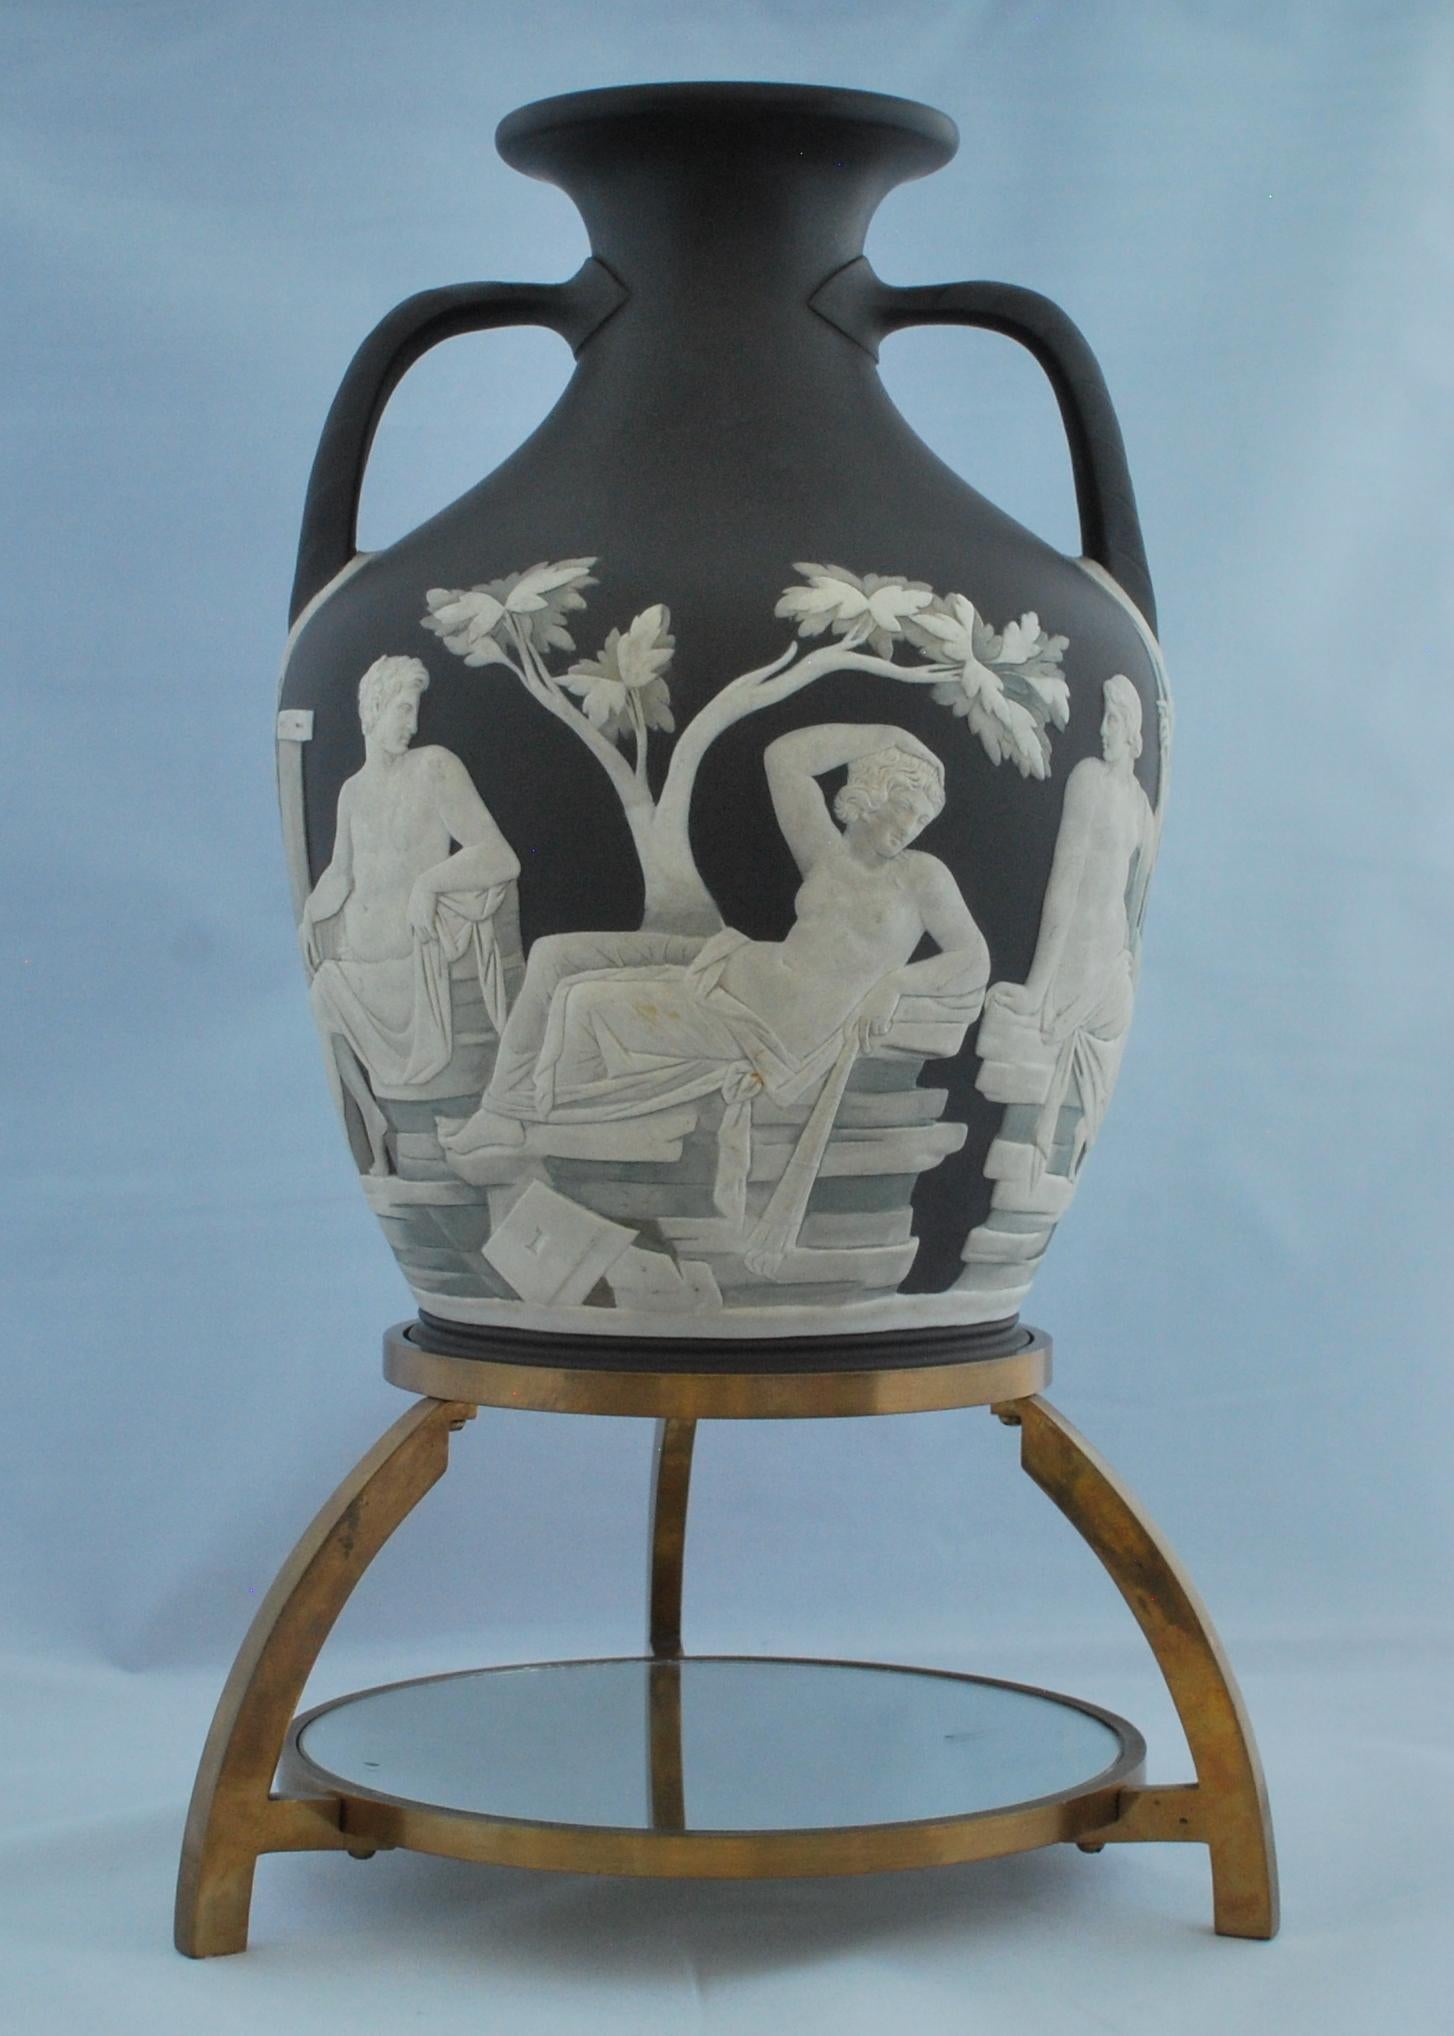 Eines der schönsten Exemplare der Portland-Vase, die Wedgwood herstellte, das in vielerlei Hinsicht mit der Erstausgabe selbst konkurriert. 

Dekoriert von Thomas Lovatt, dann geschliffen, poliert und schattiert von John Northwood in seinem Studio